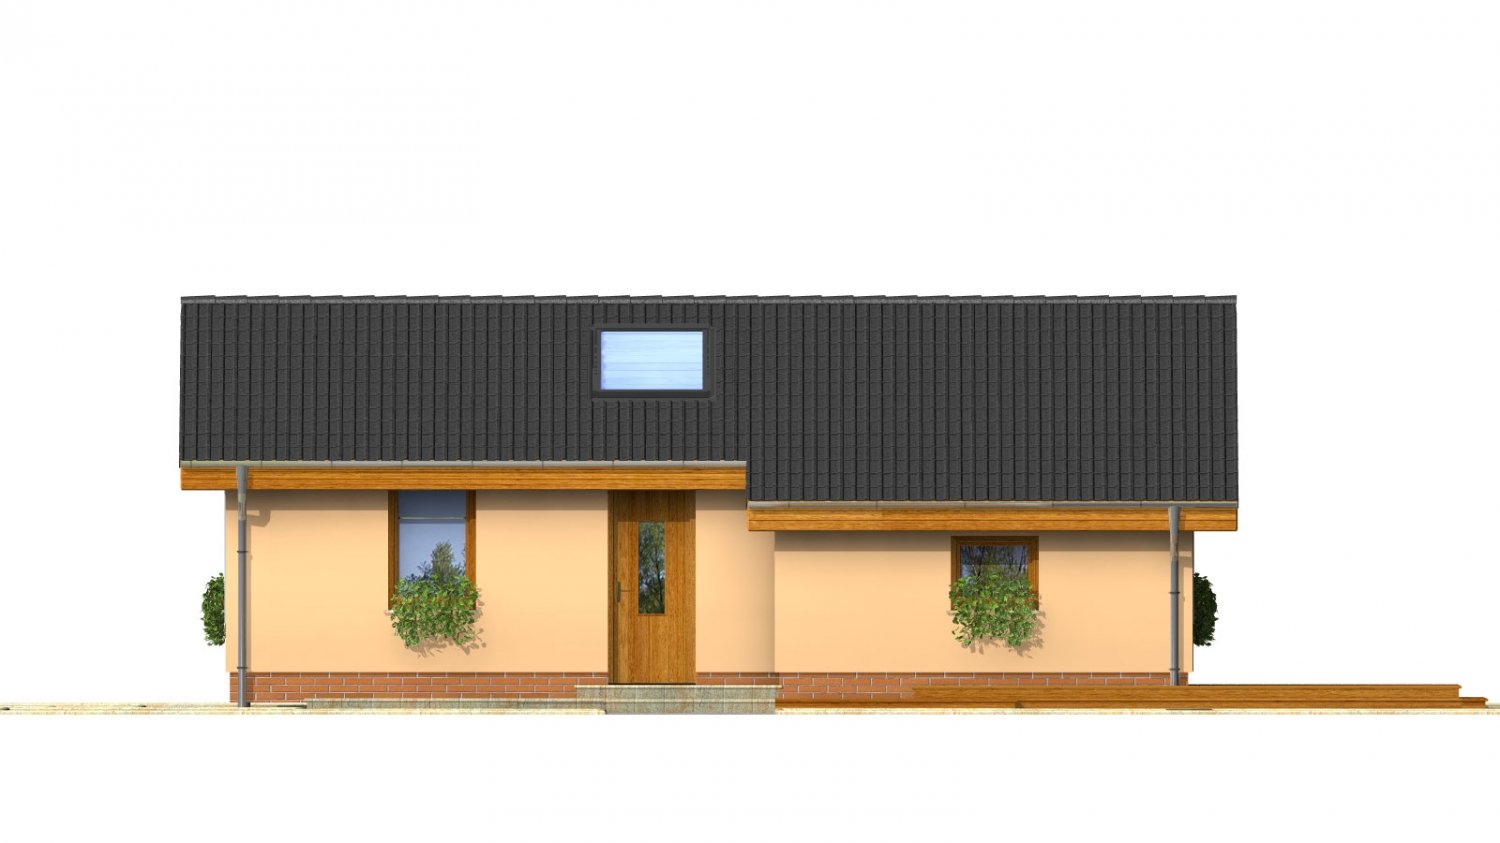 Pohľad 1. - Levný úzký dům na malý pozemek se sedlovou střechou, prosvětlený střešními okny. Efekt podkroví na přízemí.